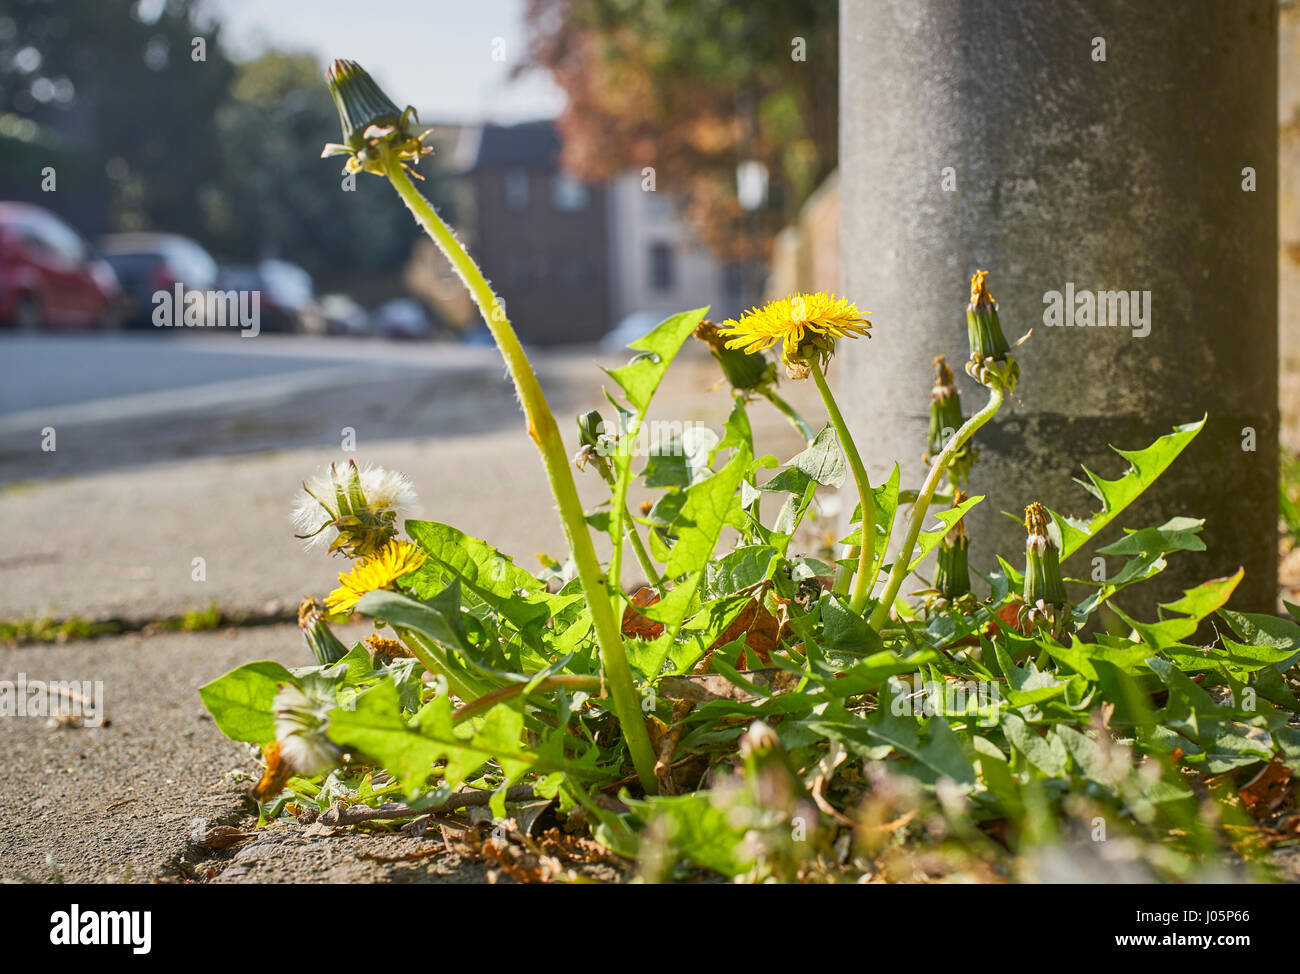 Les mauvaises herbes qui poussent hors de la chaussée sur une route urbaine Banque D'Images